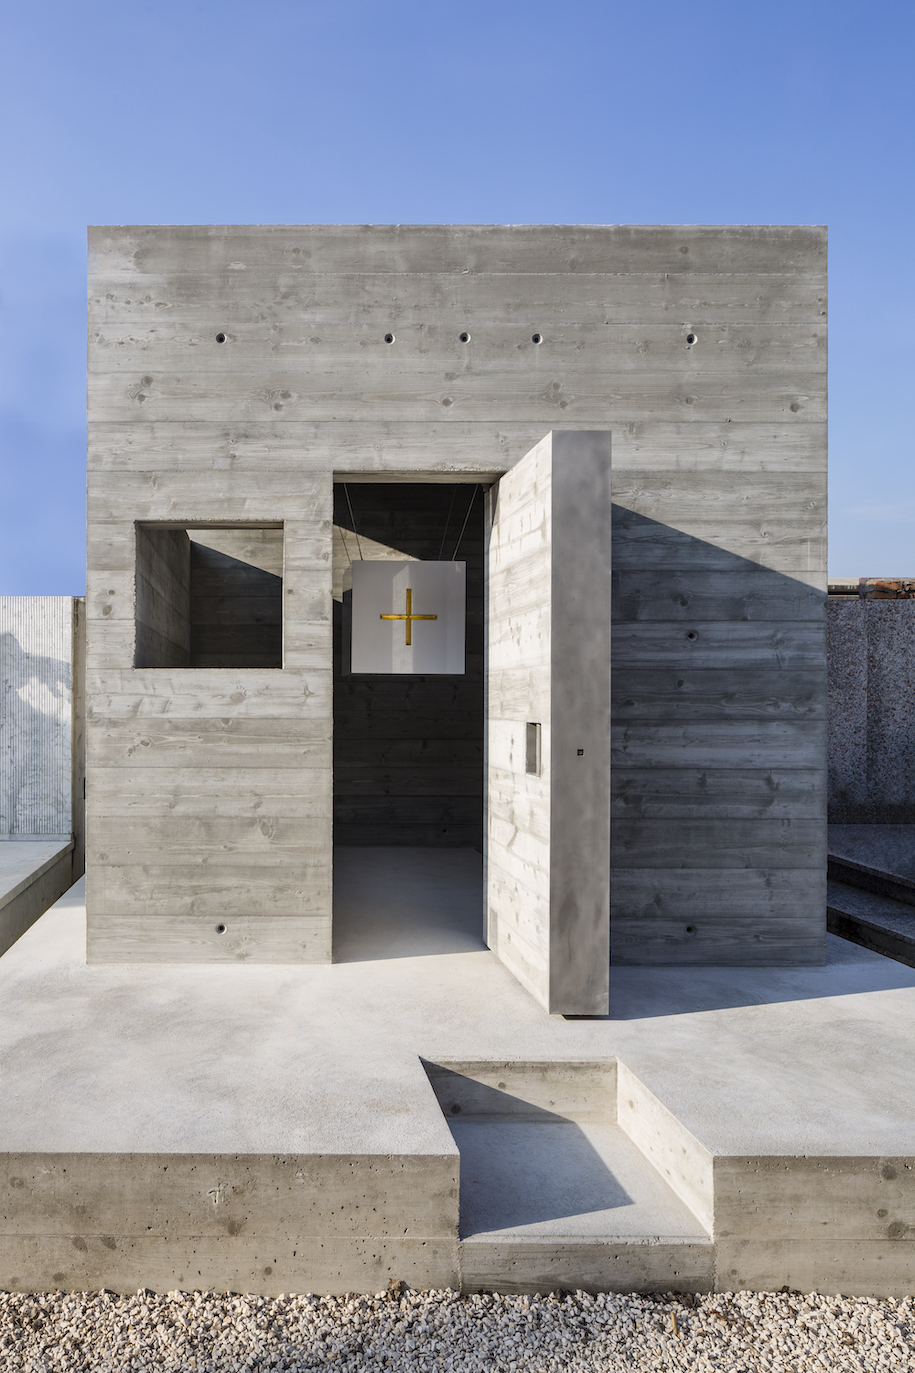 Archisearch Alberto Campo Baeza created a concrete cube tomb full of light in Venice